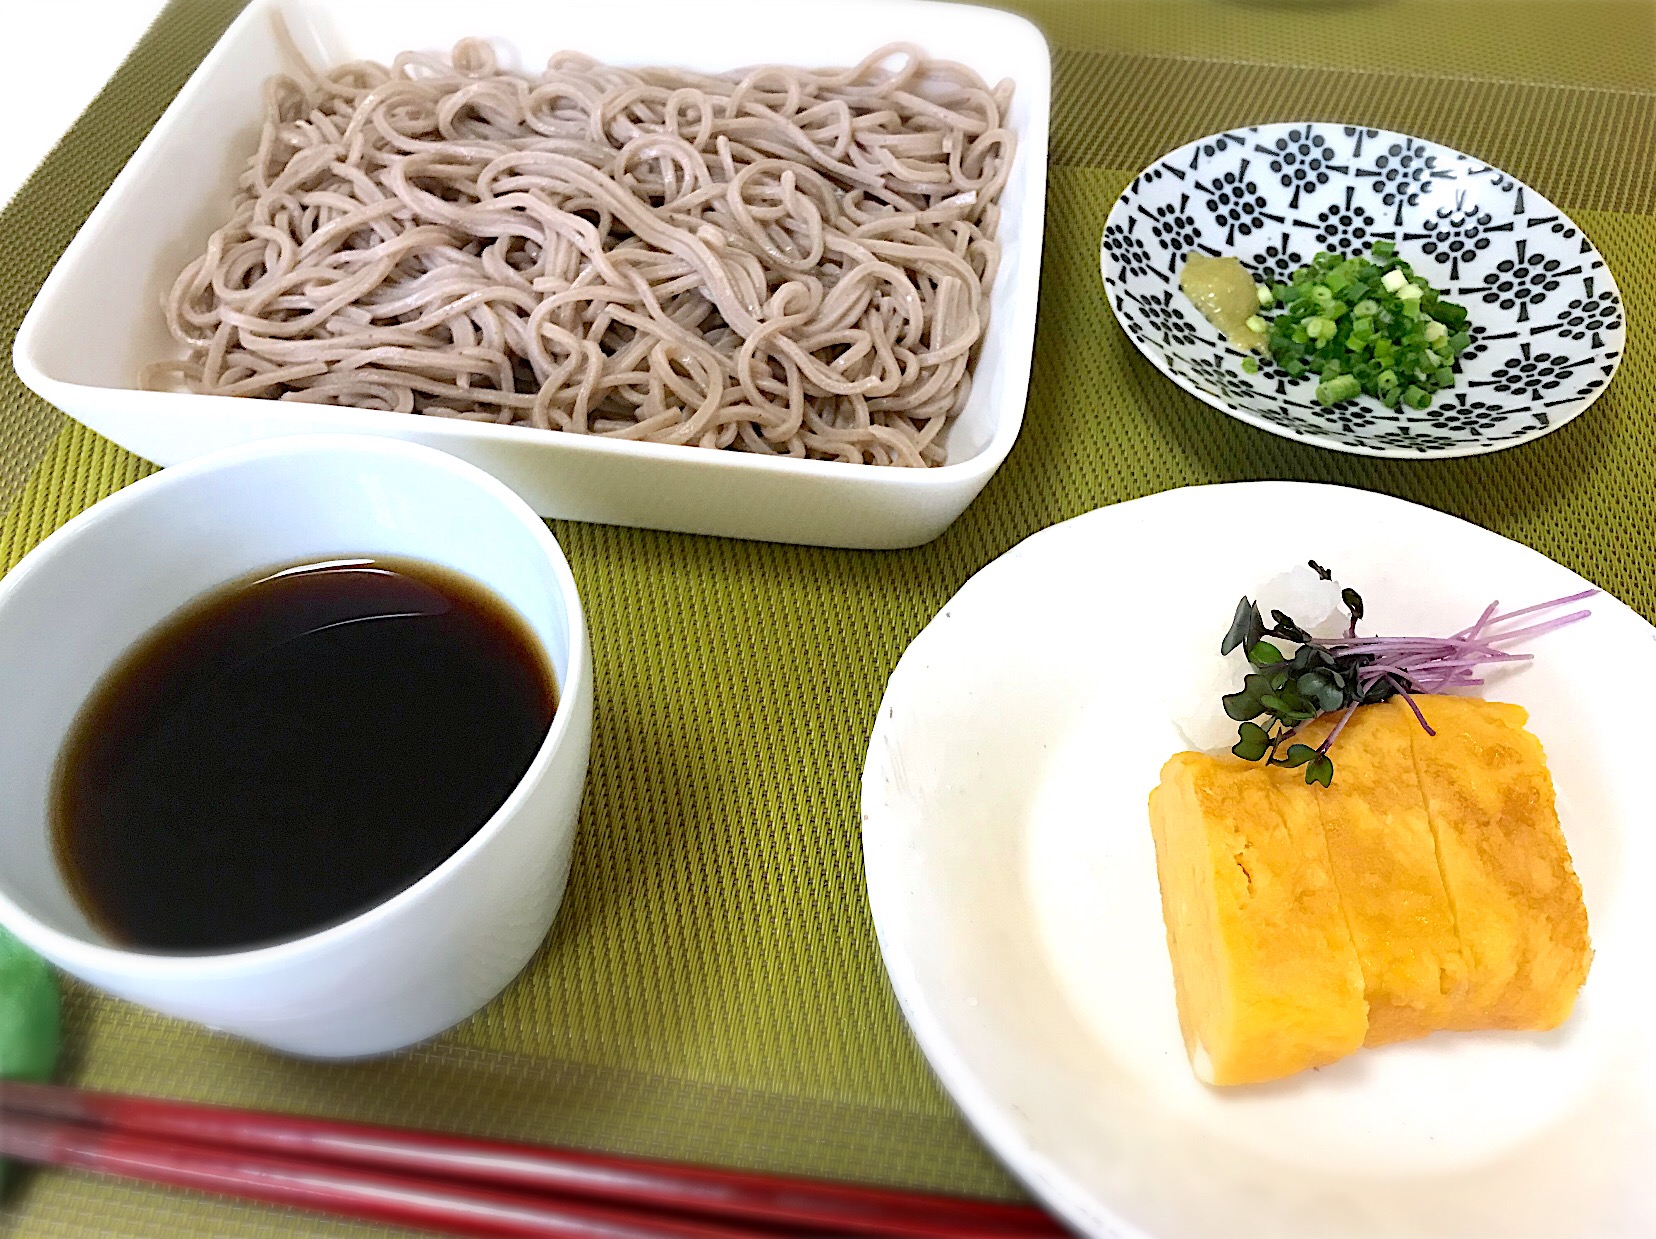 お昼ゴハン。蕎麦を茹でました！天ぷら欲しかったけど、天ぷらになりそうなものがなくて、だし巻き卵になりました。紫スプラウトがキレイ♪